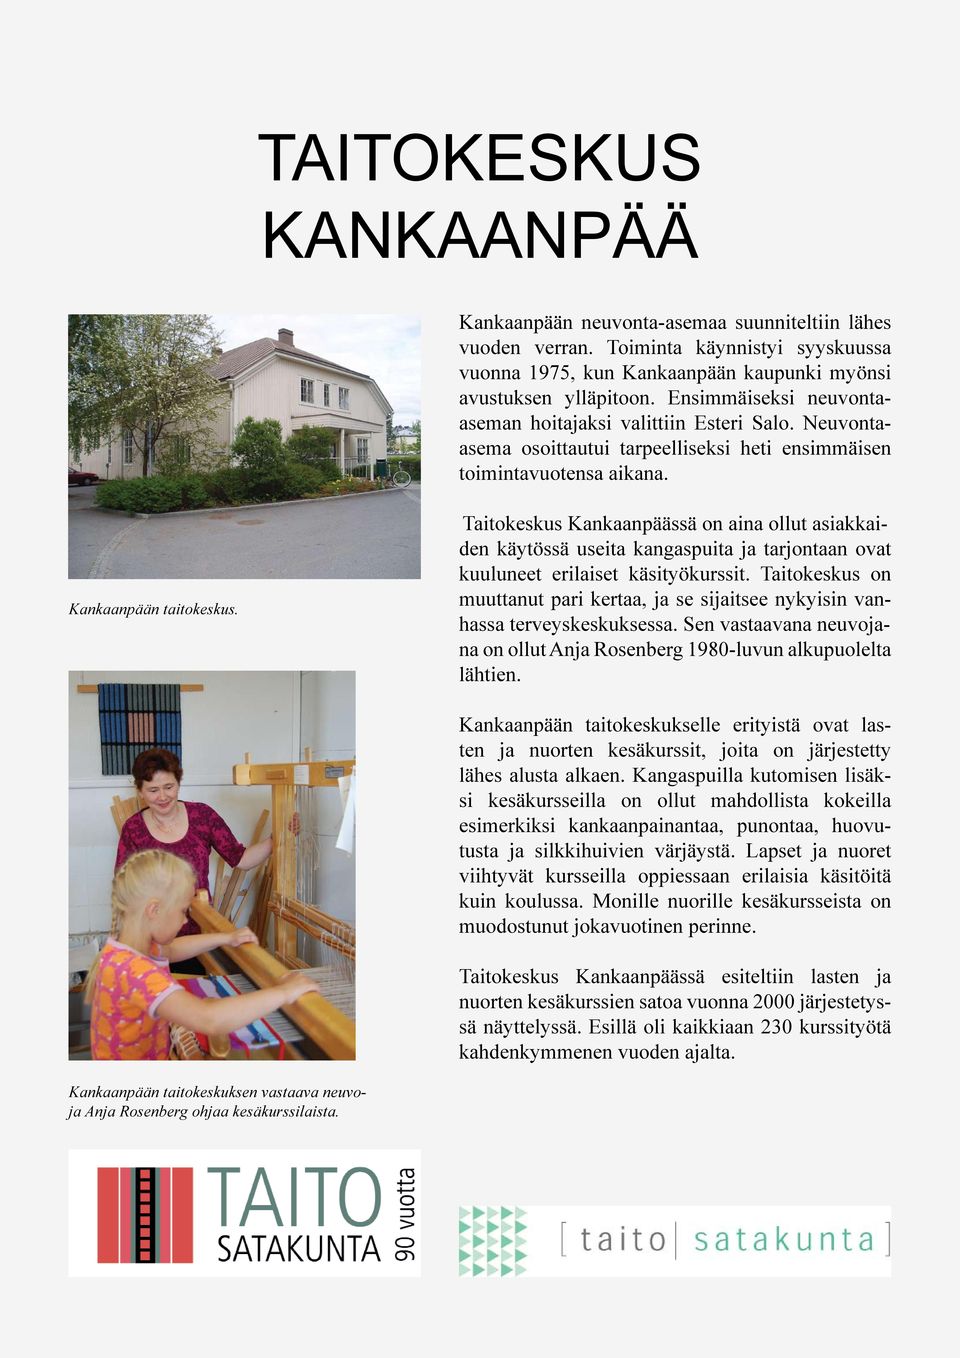 Taitokeskus Kankaanpäässä on aina ollut asiakkaiden käytössä useita kangaspuita ja tarjontaan ovat kuuluneet erilaiset käsityökurssit.